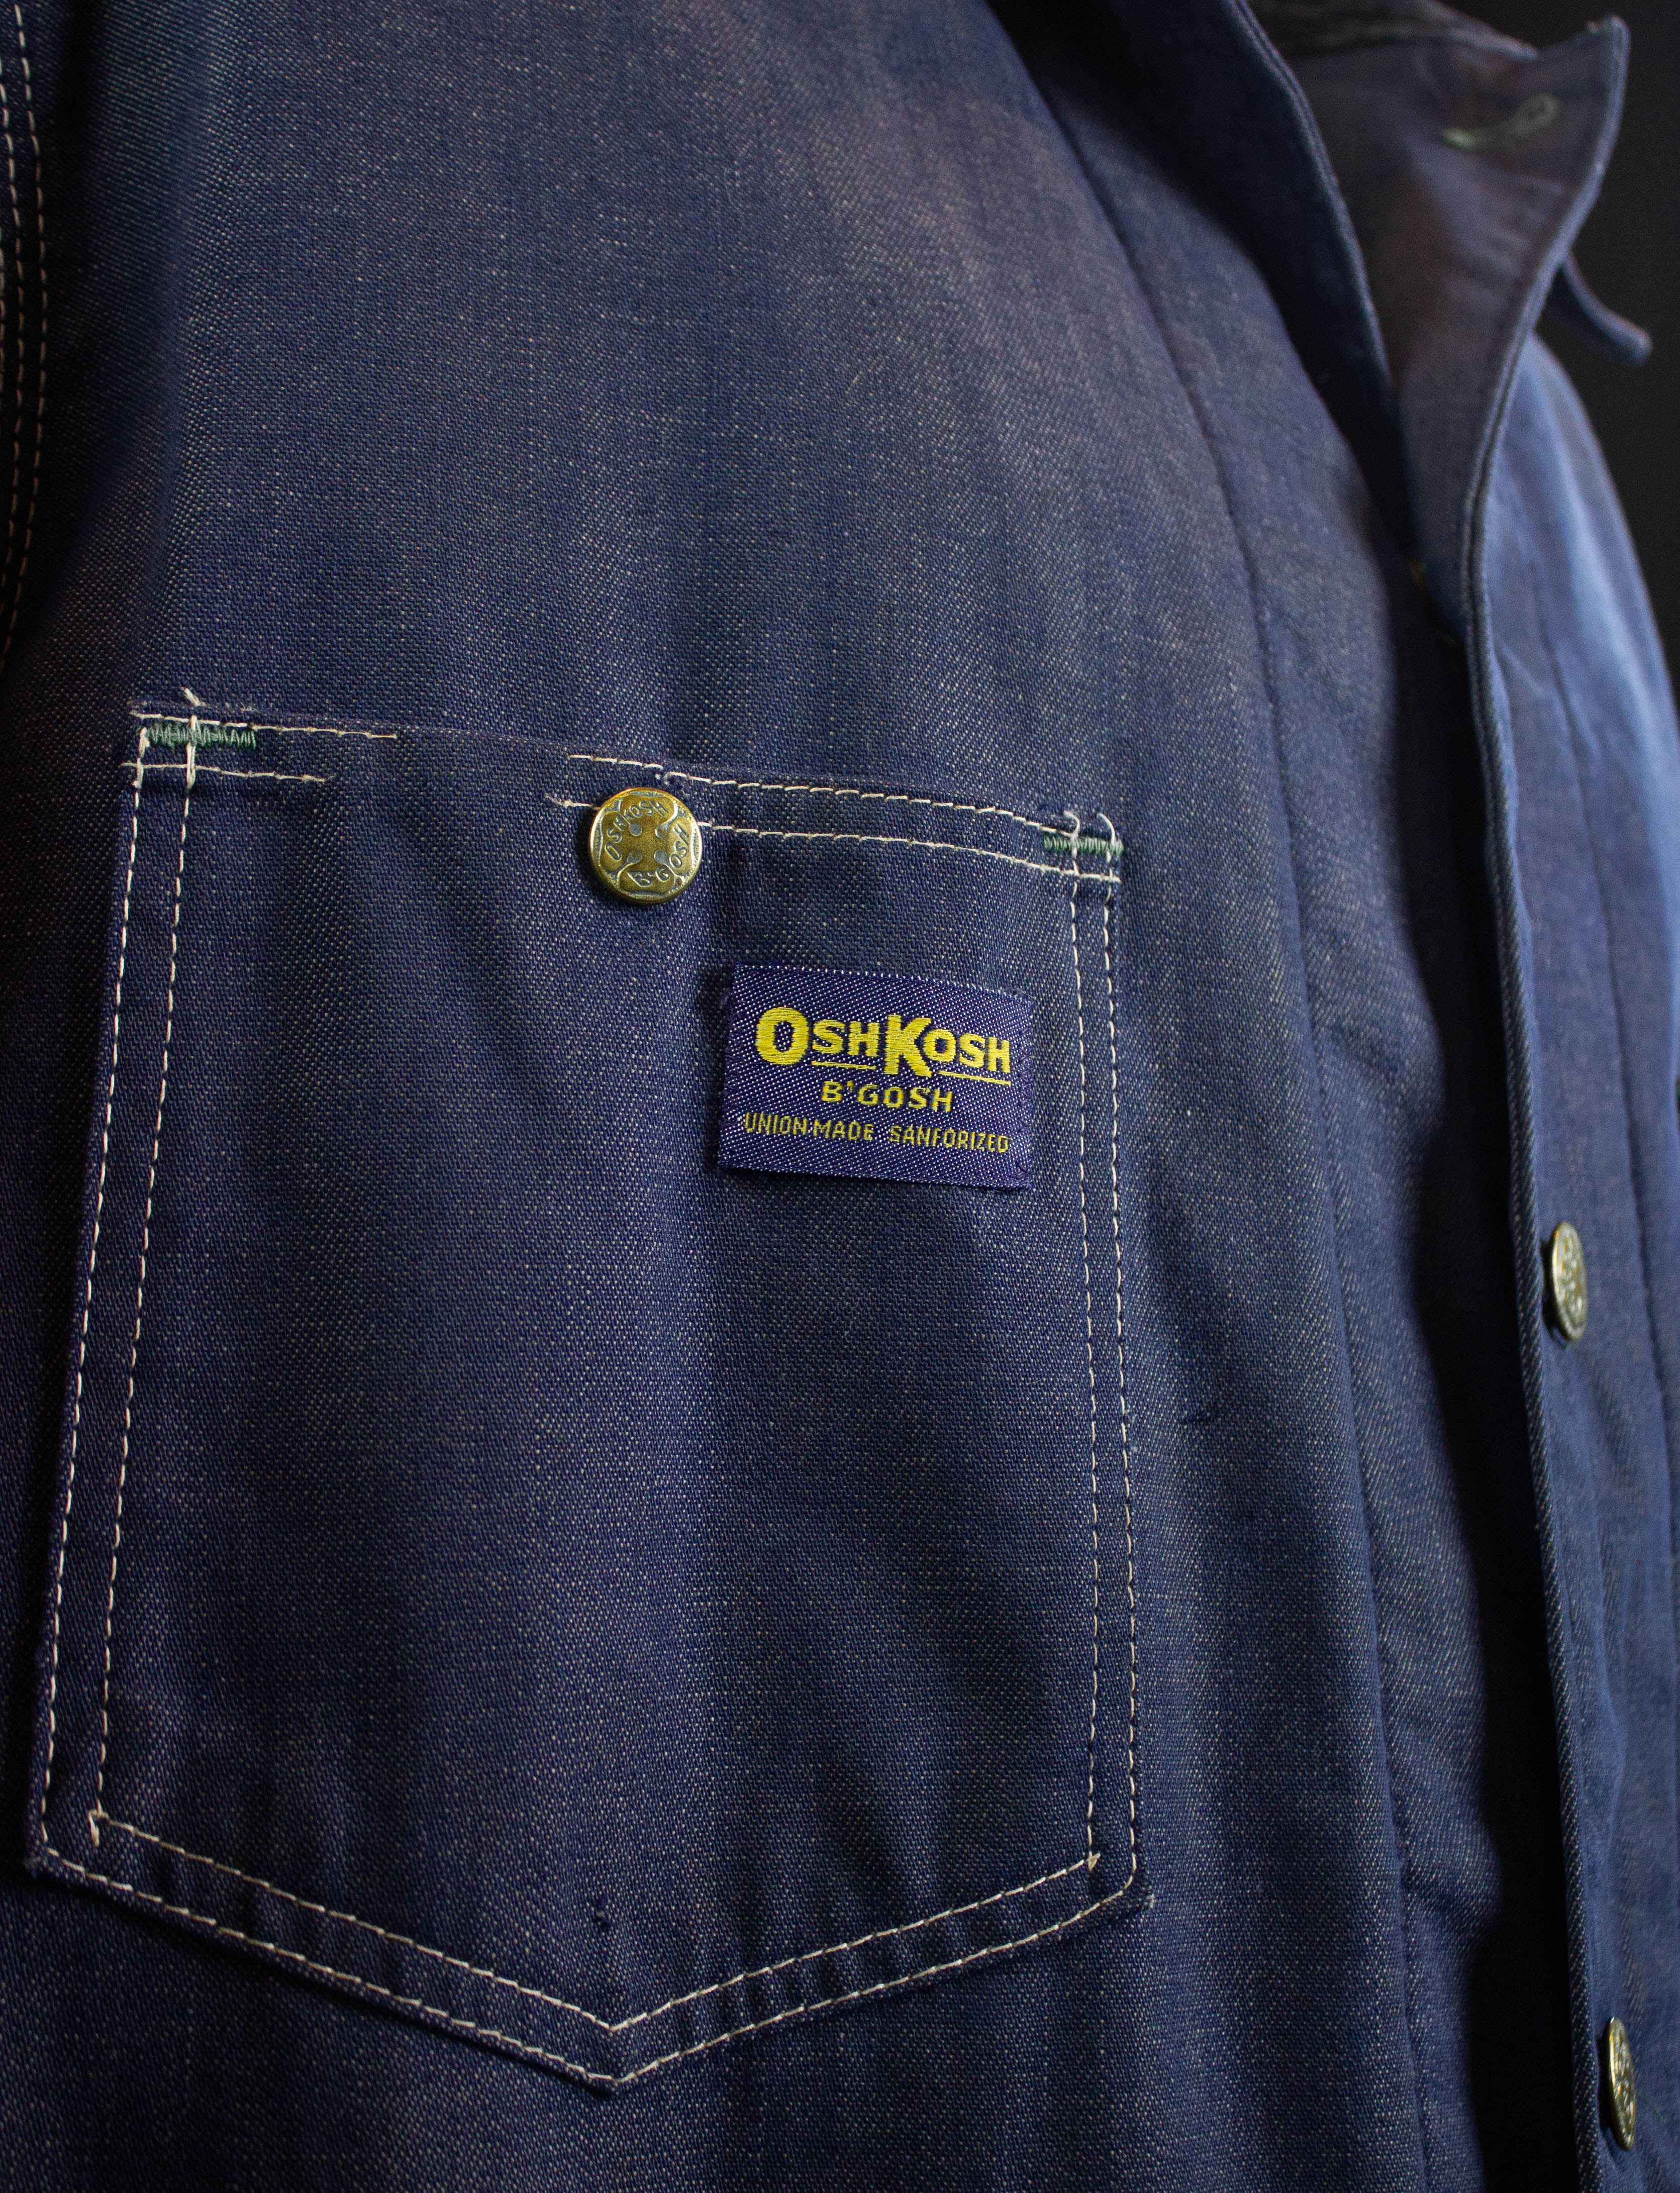 Vintage Oshkosh B'Gosh Blanket Lined Denim Chore Jacket 70s 